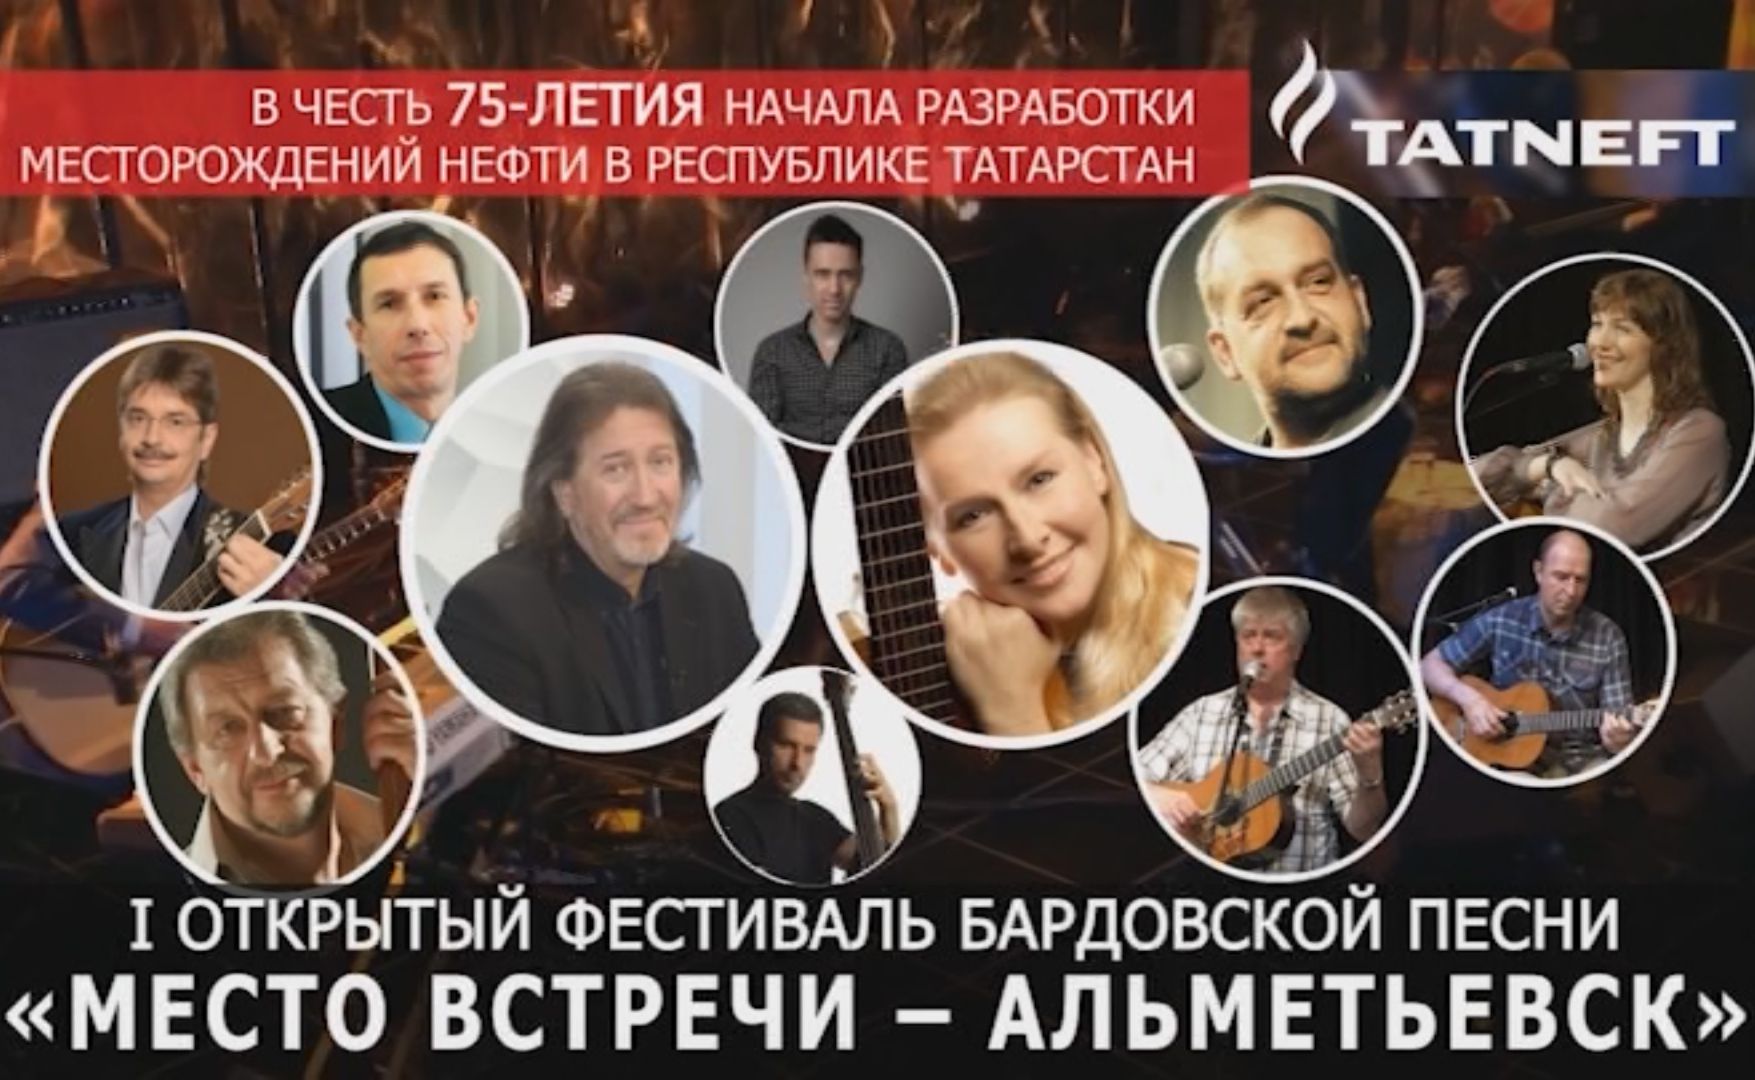 Первый открытый фестиваль бардовской песни пройдет в Альметьевске&nbsp;